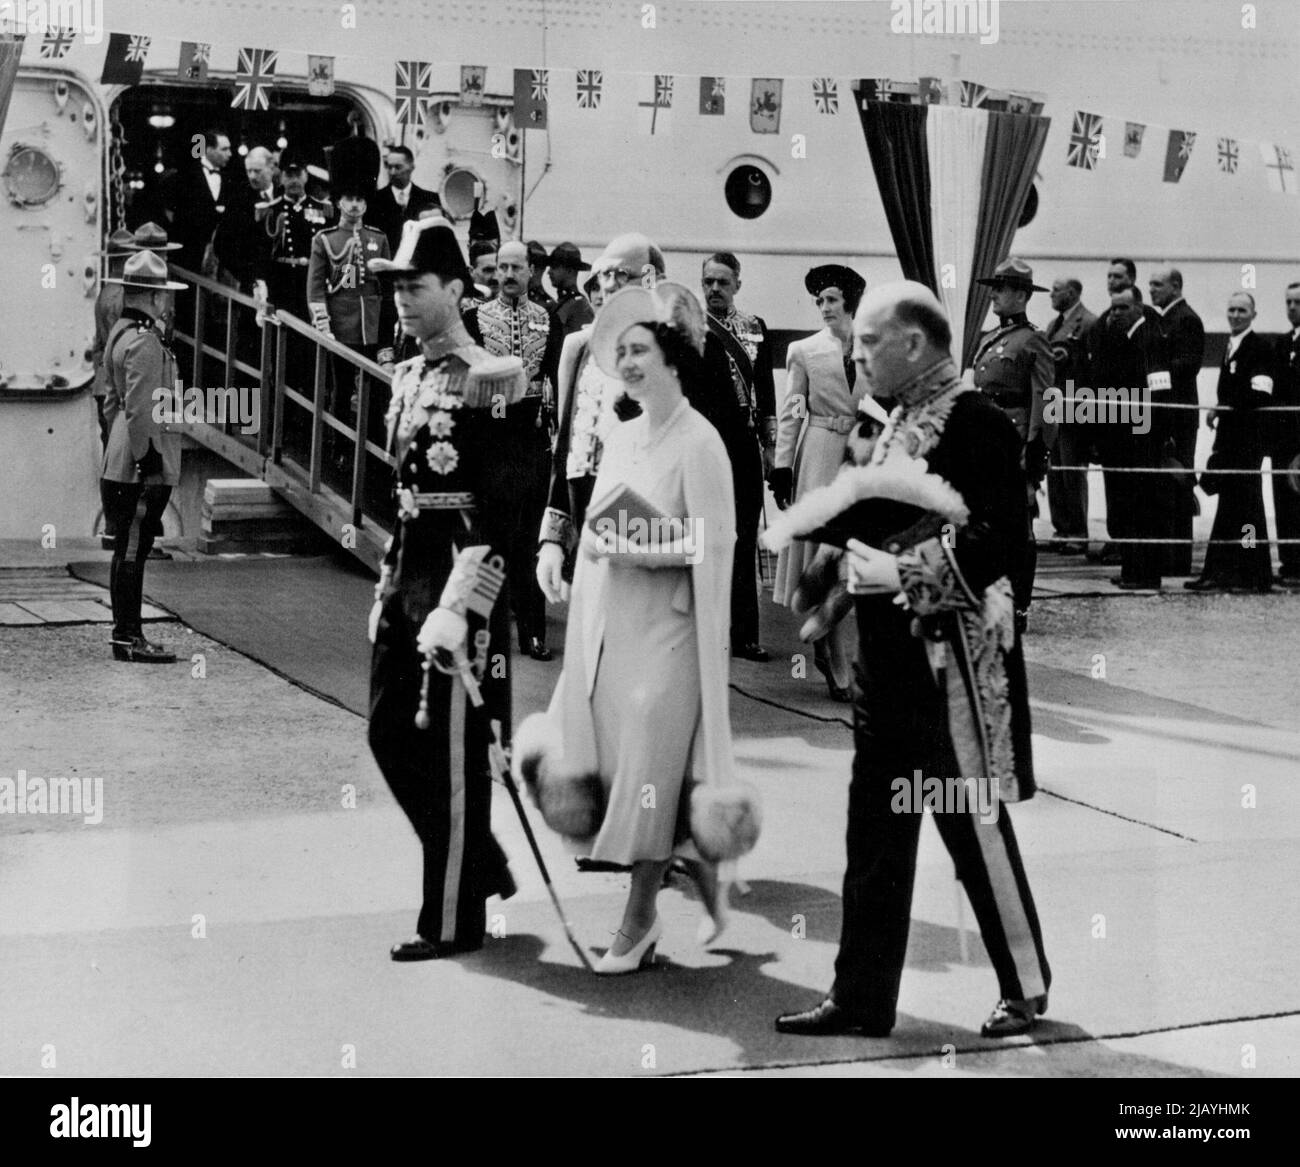 Britische Herrscher steigen in Quebec an Land -- neben Premierminister McKenzie, dem König von Kanada, werden König George und Königin Elizabeth gezeigt, als sie nach dem Aussteigen aus der SS-Kaiserin von Australien das Gangplank verließen. Sie sind die ersten britischen Sovereigns, die jemals auf kanadischen Boden getreten sind. 17.Mai 1939. (Foto von ACME). Stockfoto